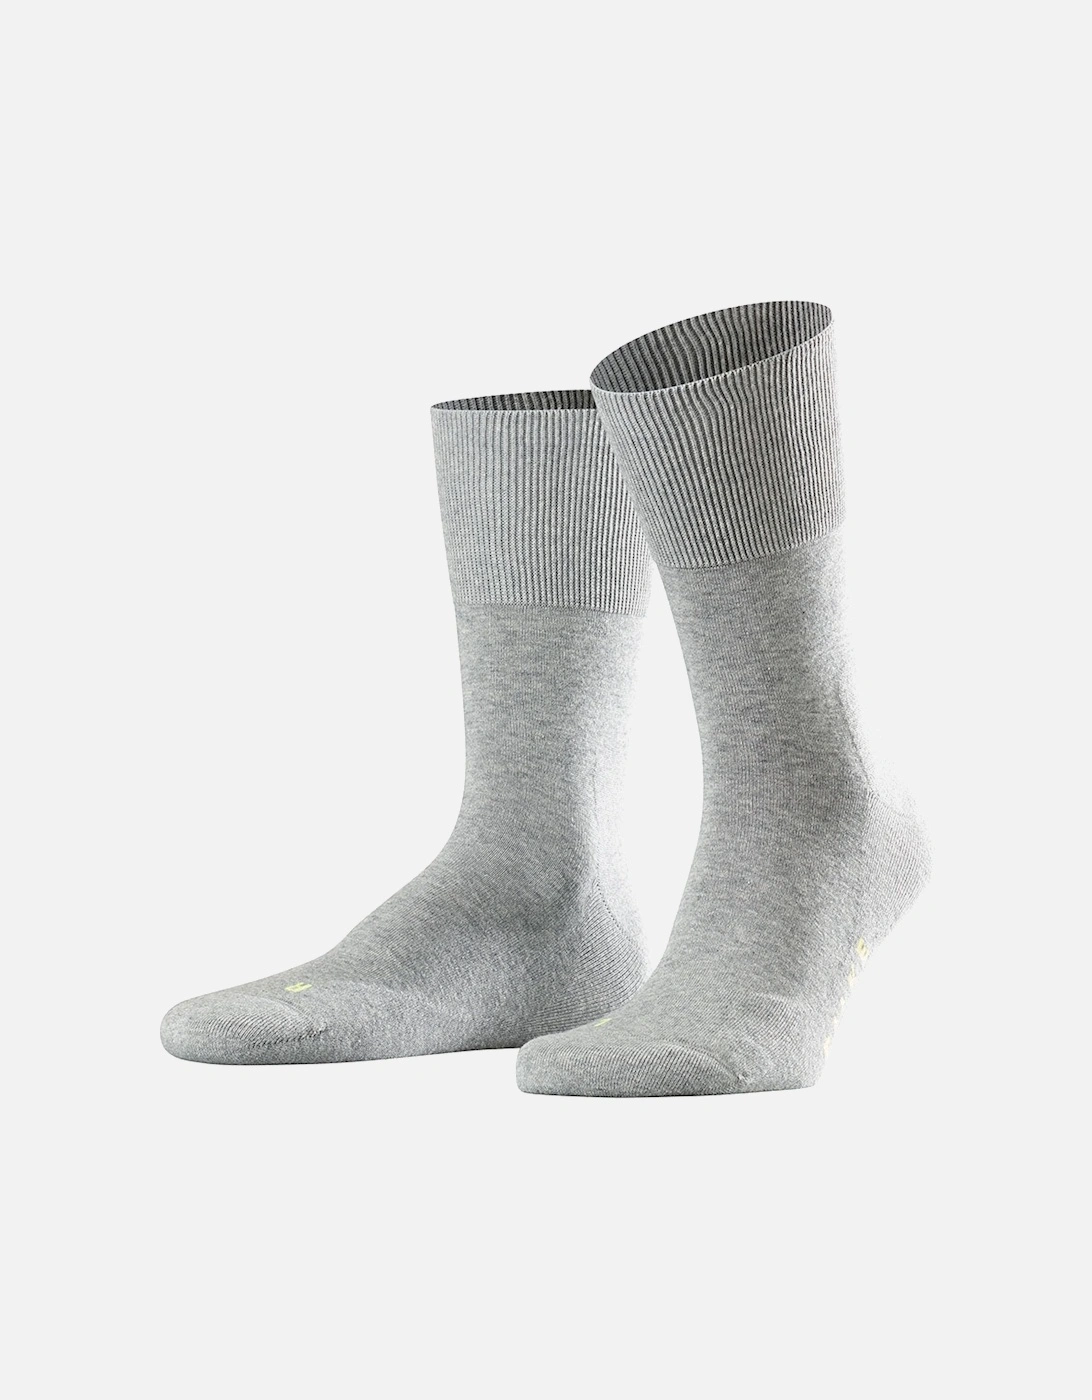 Men's Run Socks, 2 of 1